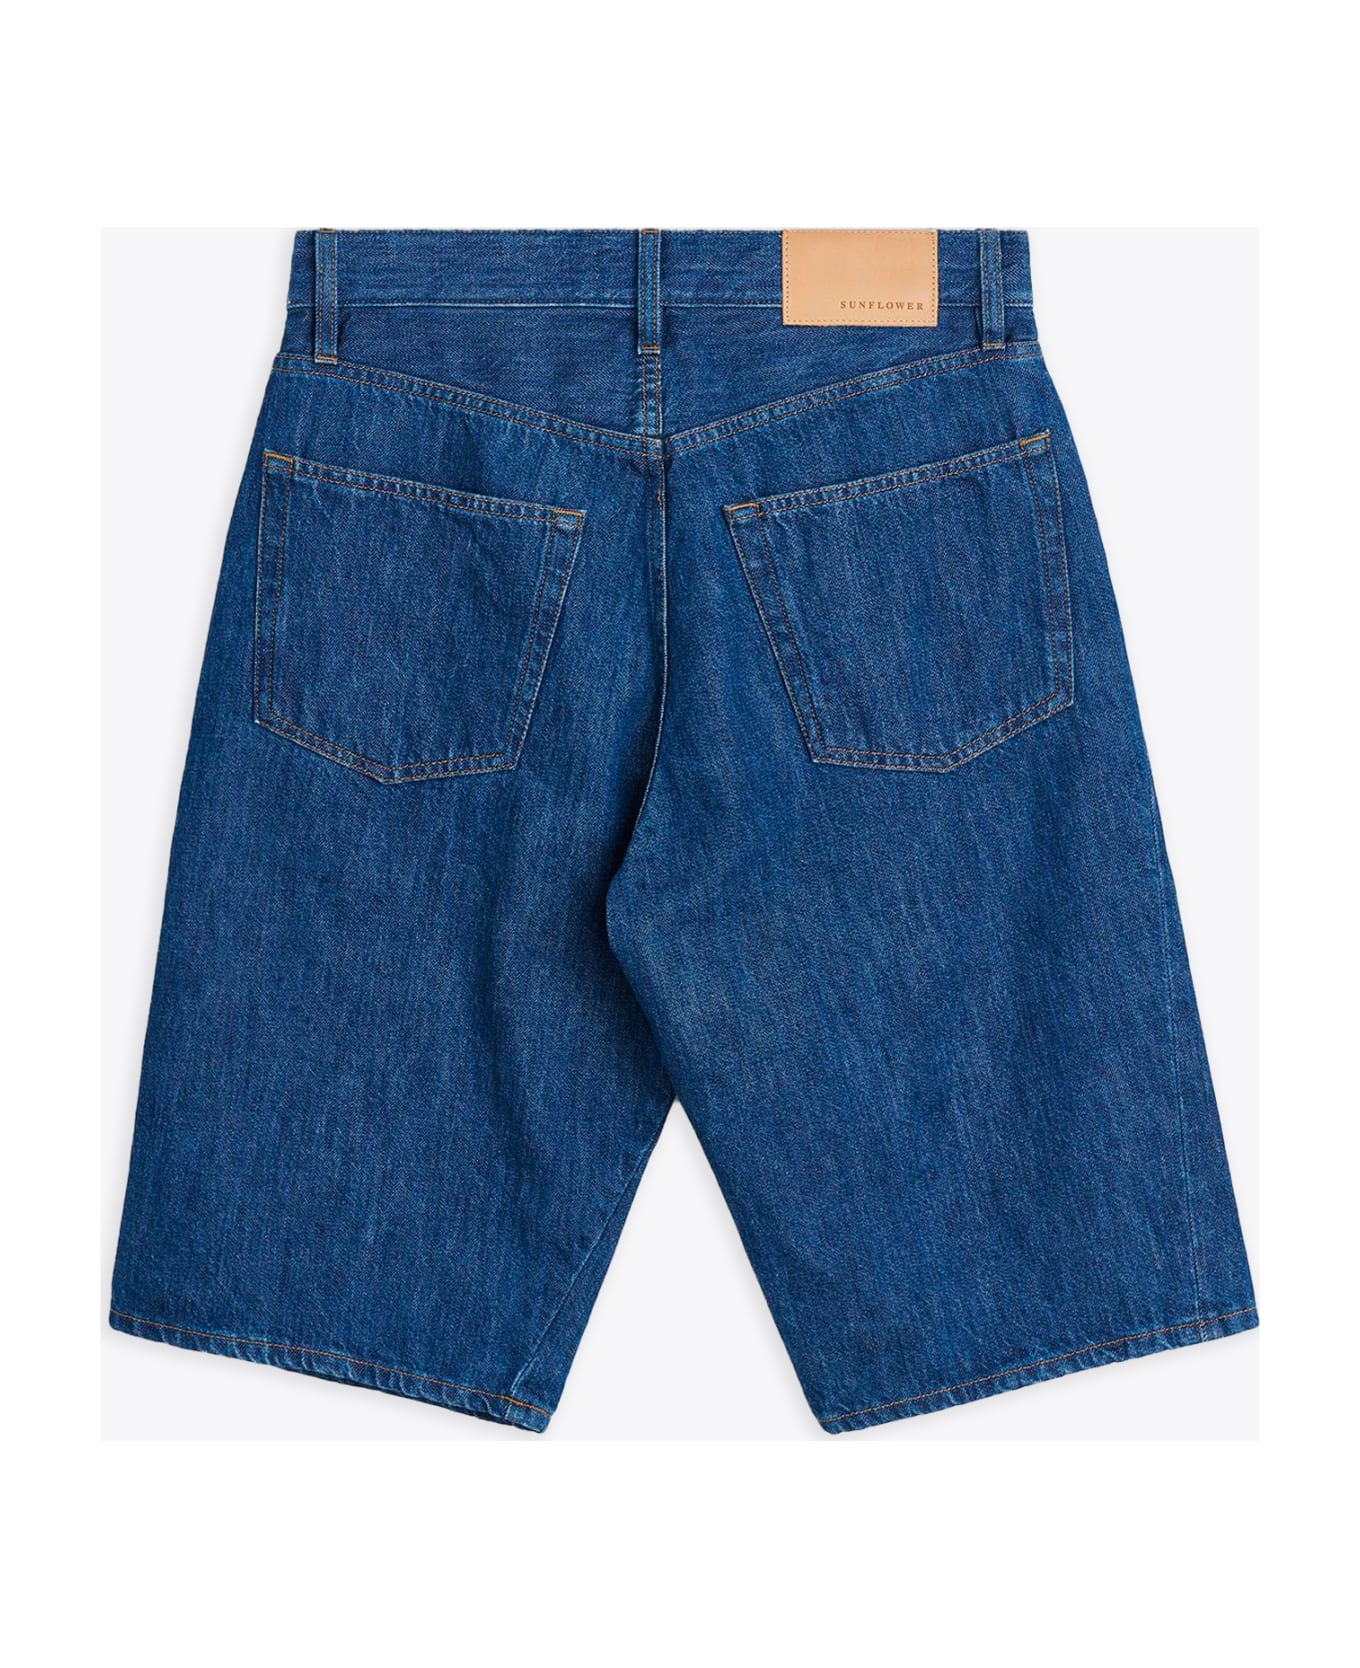 Sunflower #5090 Blue rinse denim shorts - Wide Twist Shorts - Blu